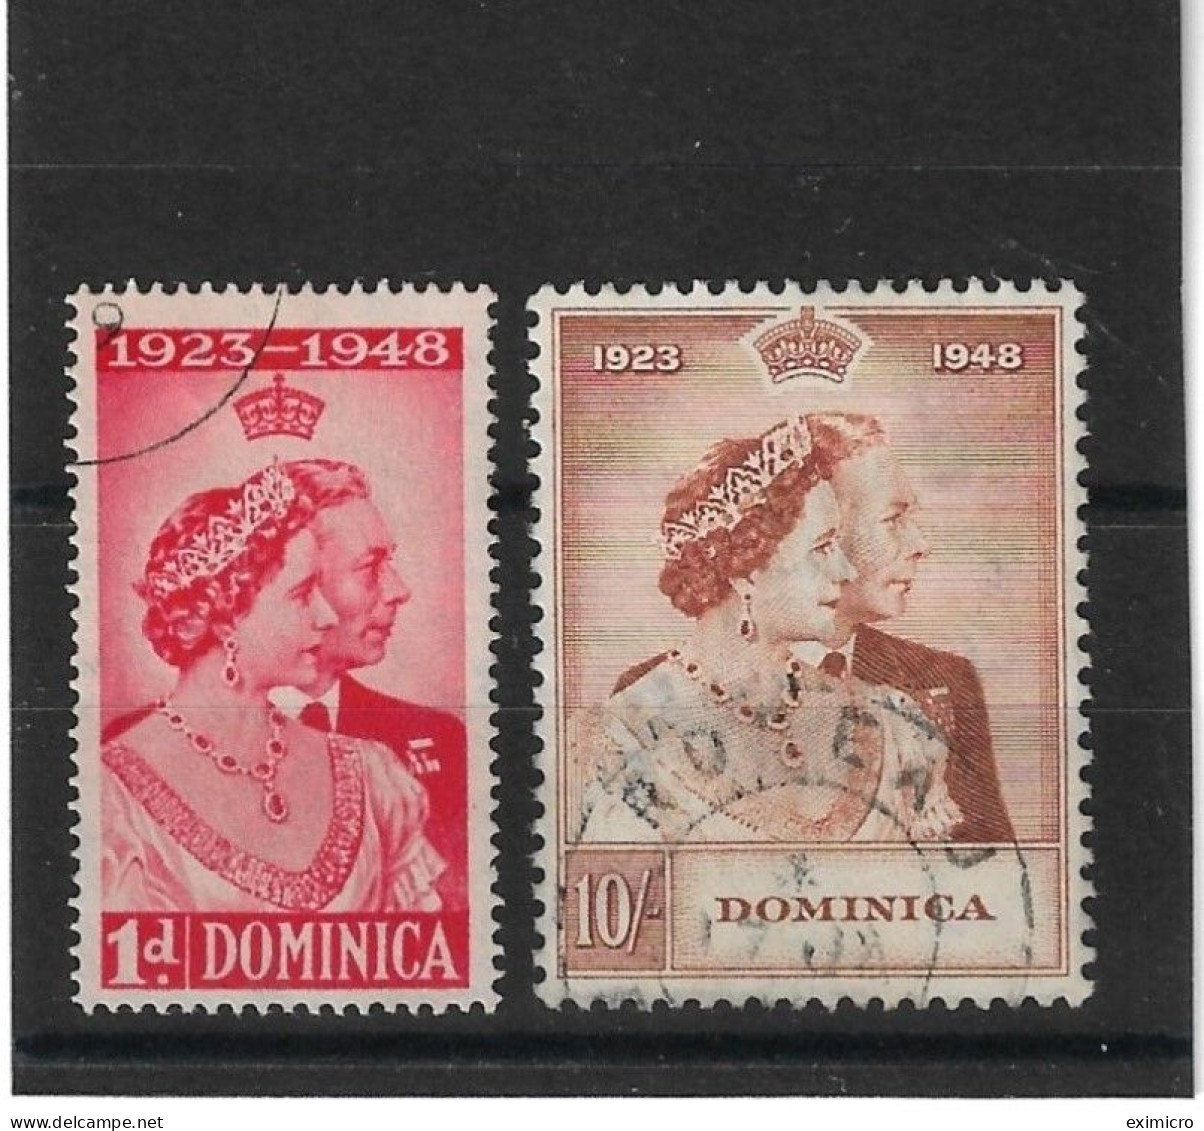 DOMINICA 1948 SILVER WEDDING SET FINE USED Cat £48+ - Dominica (...-1978)